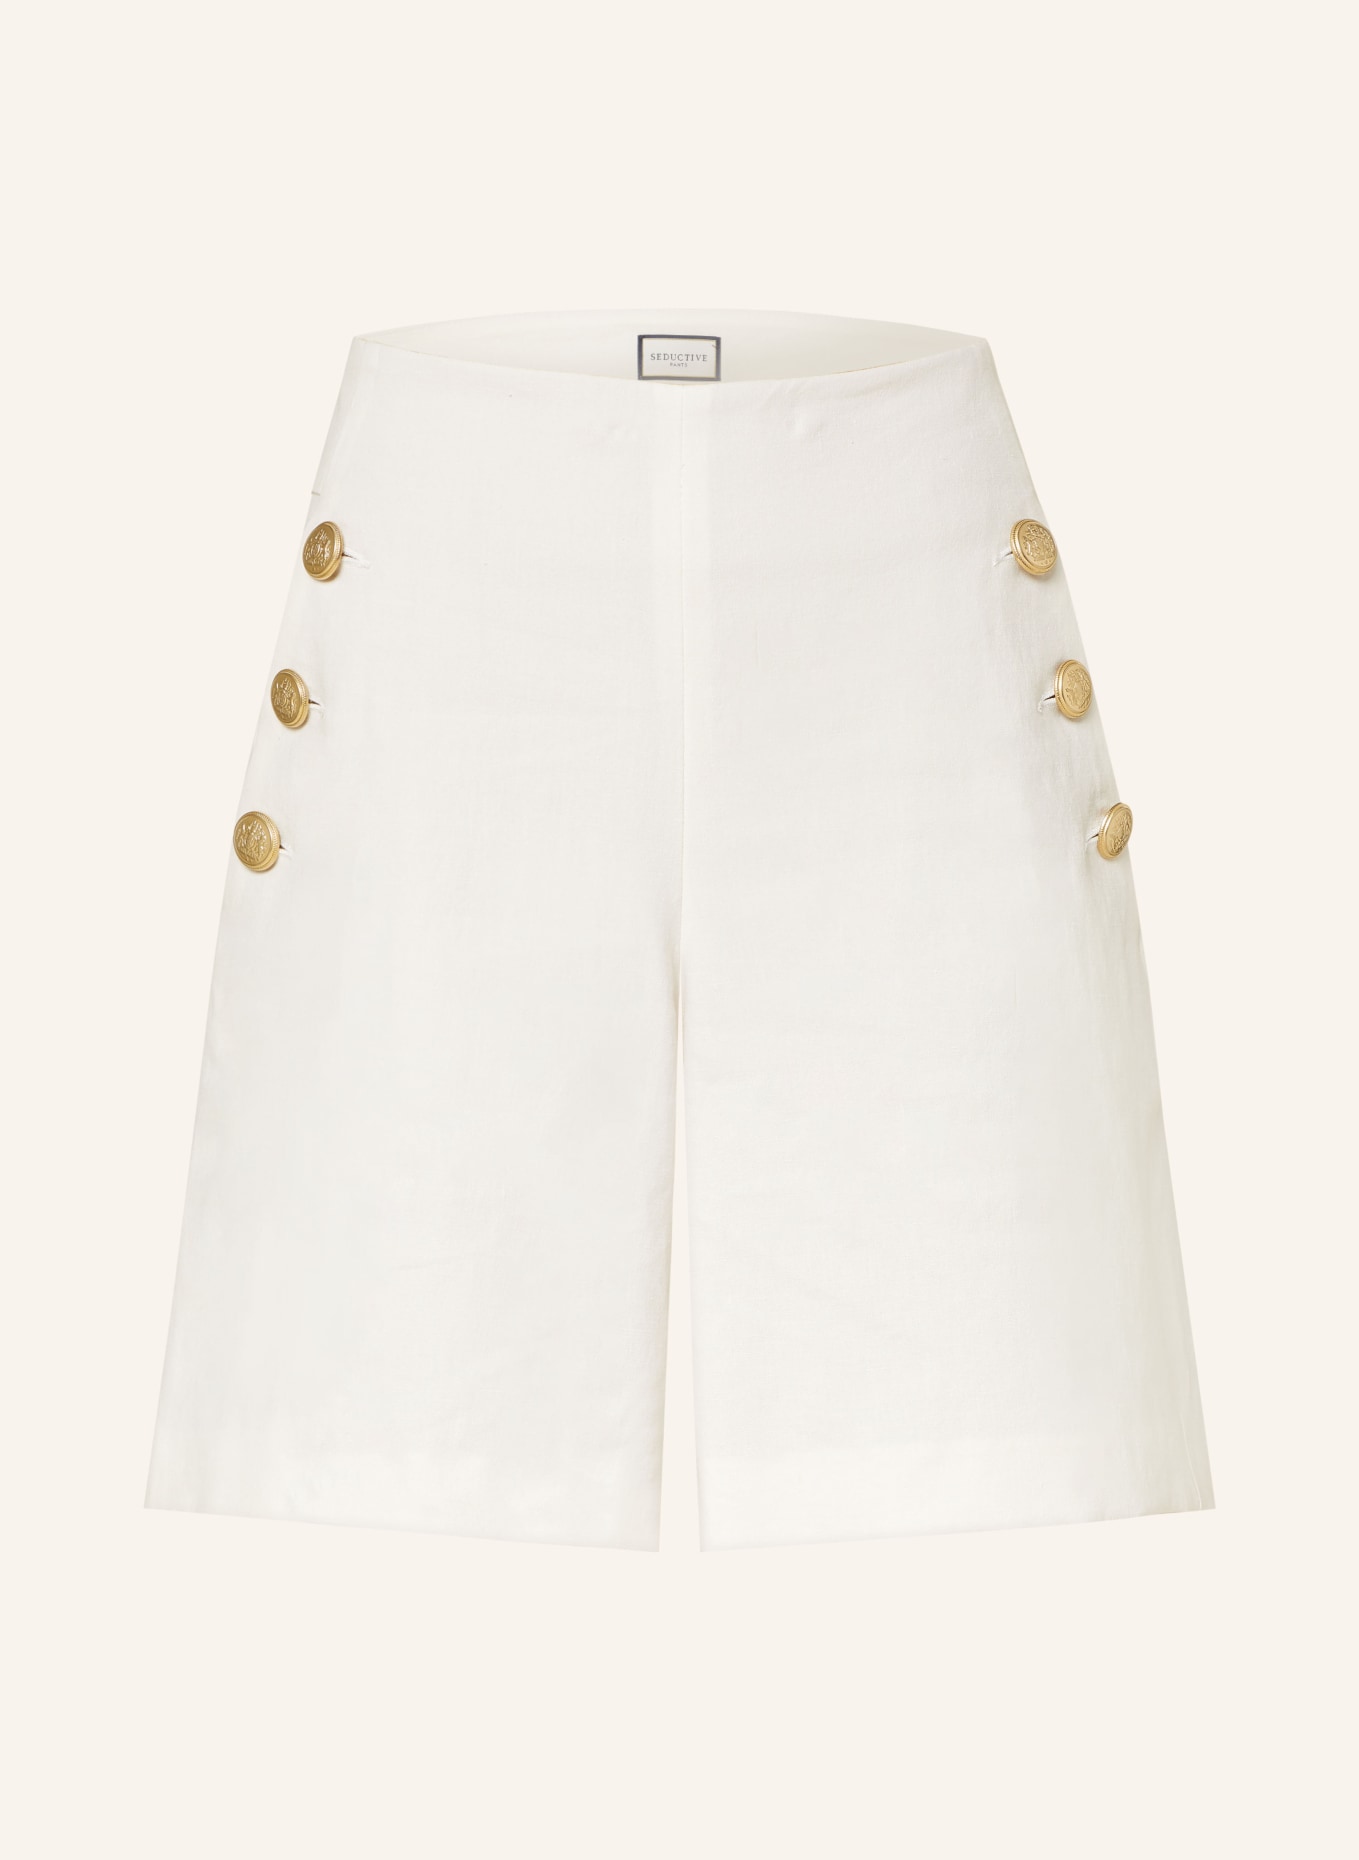 SEDUCTIVE Shorts BRADY with linen, Color: BEIGE (Image 1)